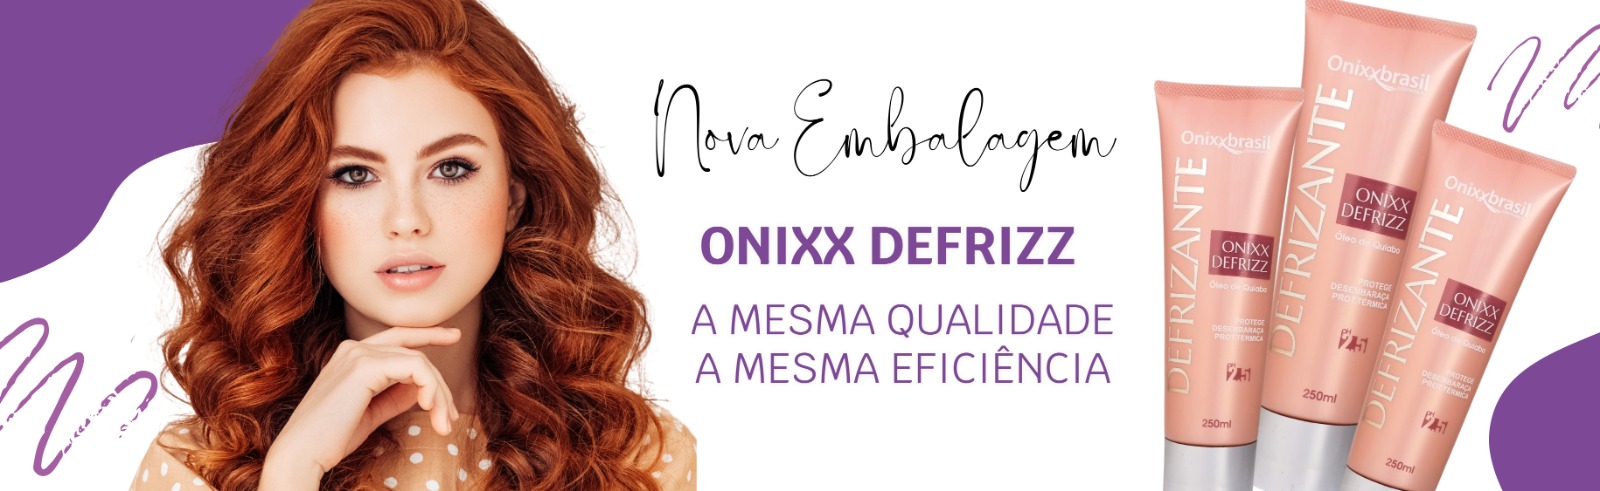 Onixx Defrizz